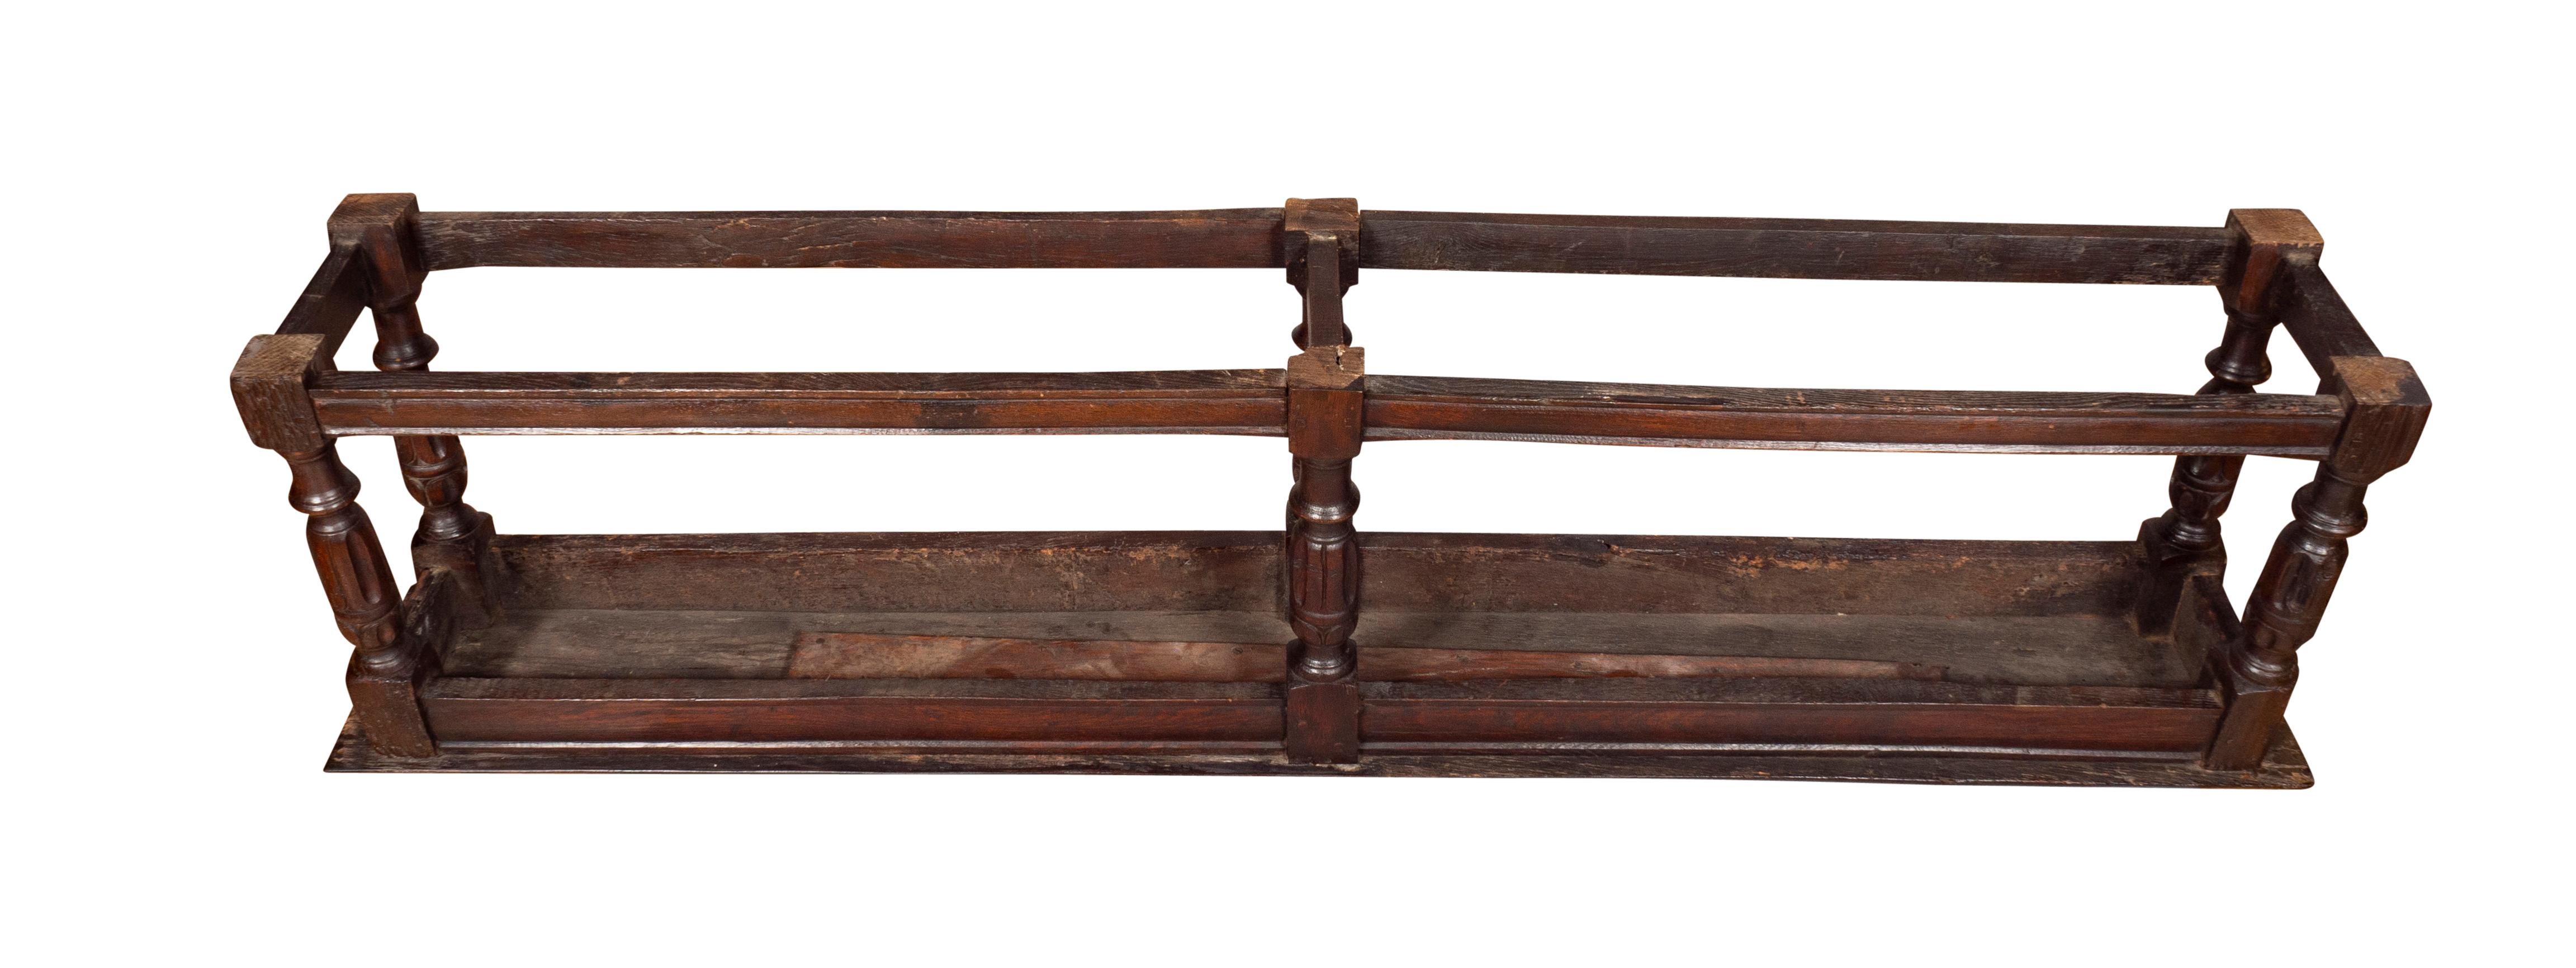 17th Century Jacobean Style Oak Long Bench